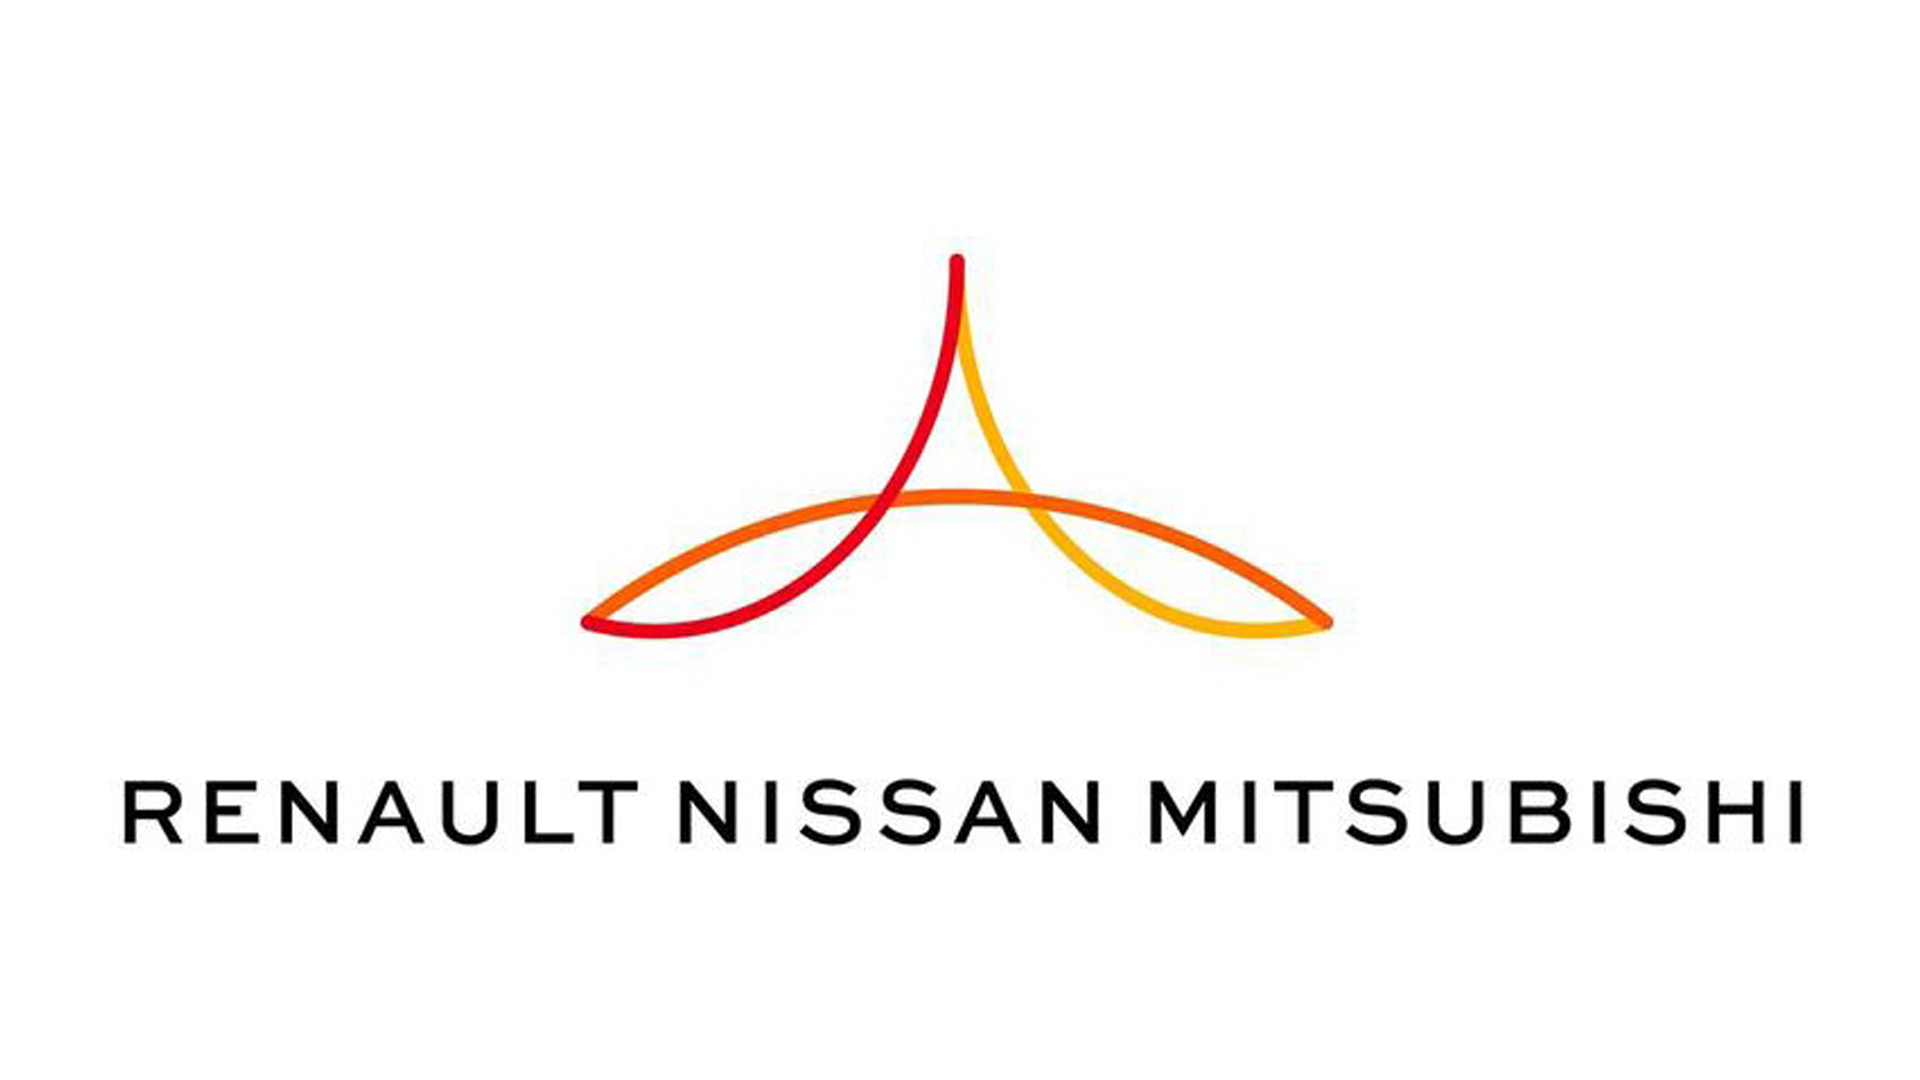 重振旗鼓！Renault与 Nissan 将在近期公布联盟重组协议